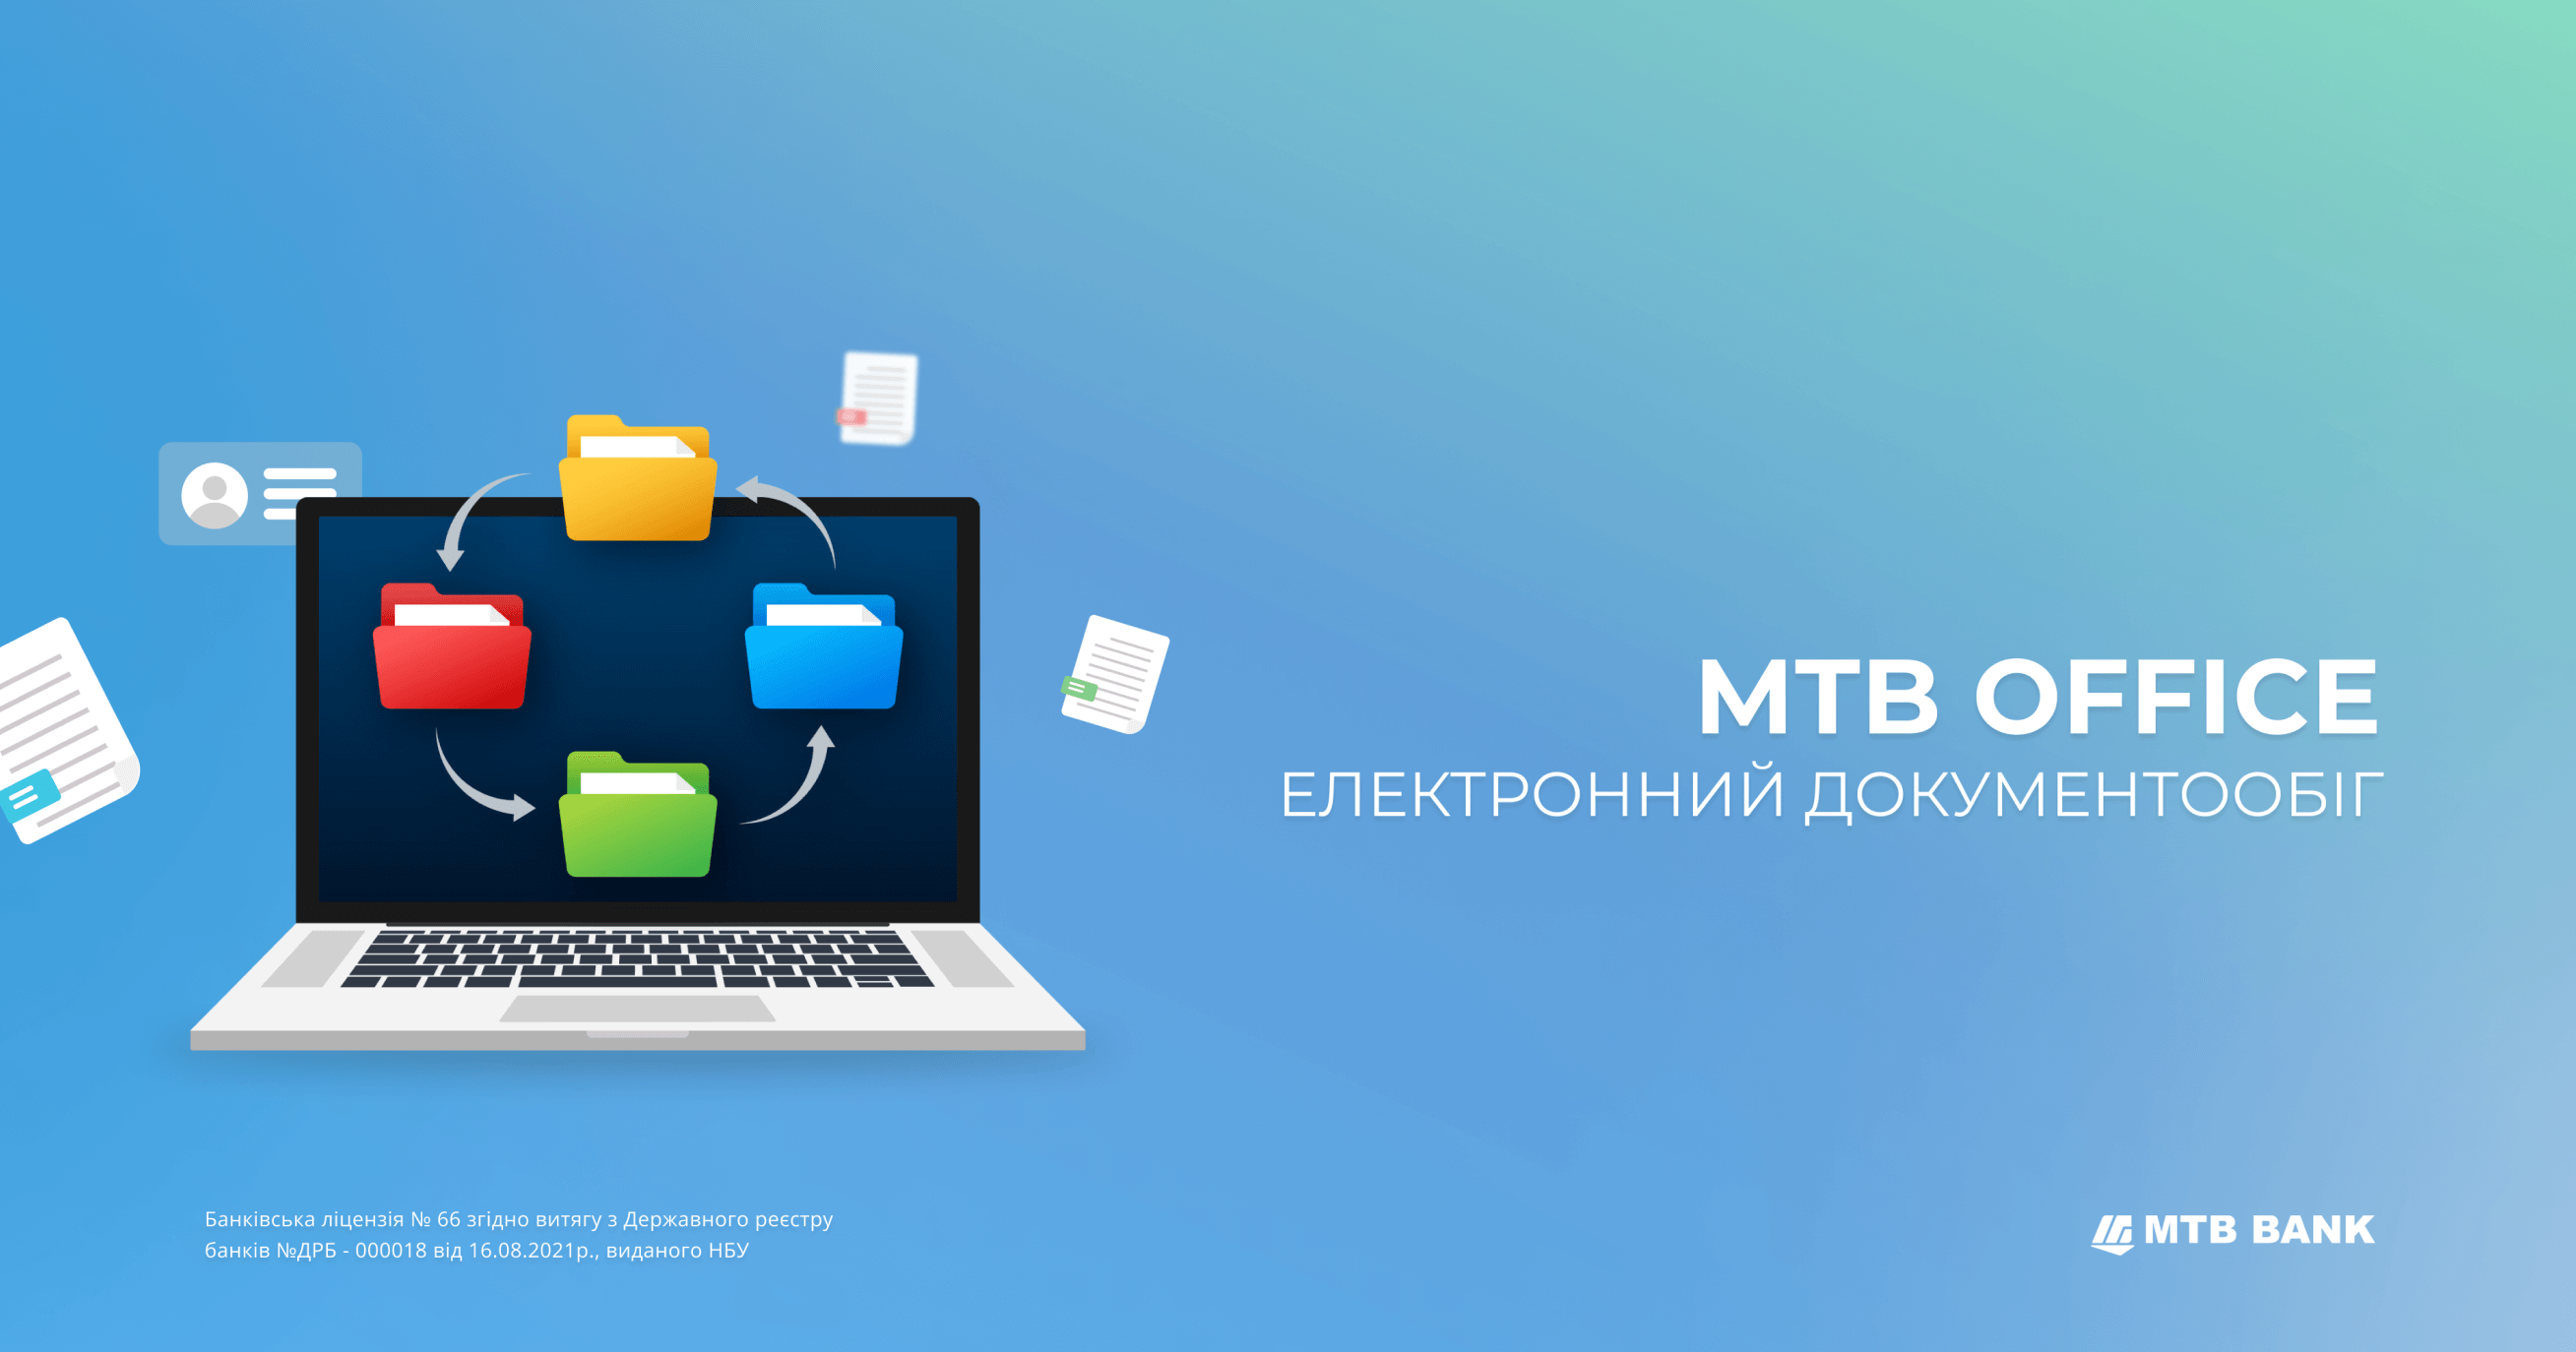 МТВ Office:  ще одна можливість дистанційного ділового спілкування - фото - mtb.ua